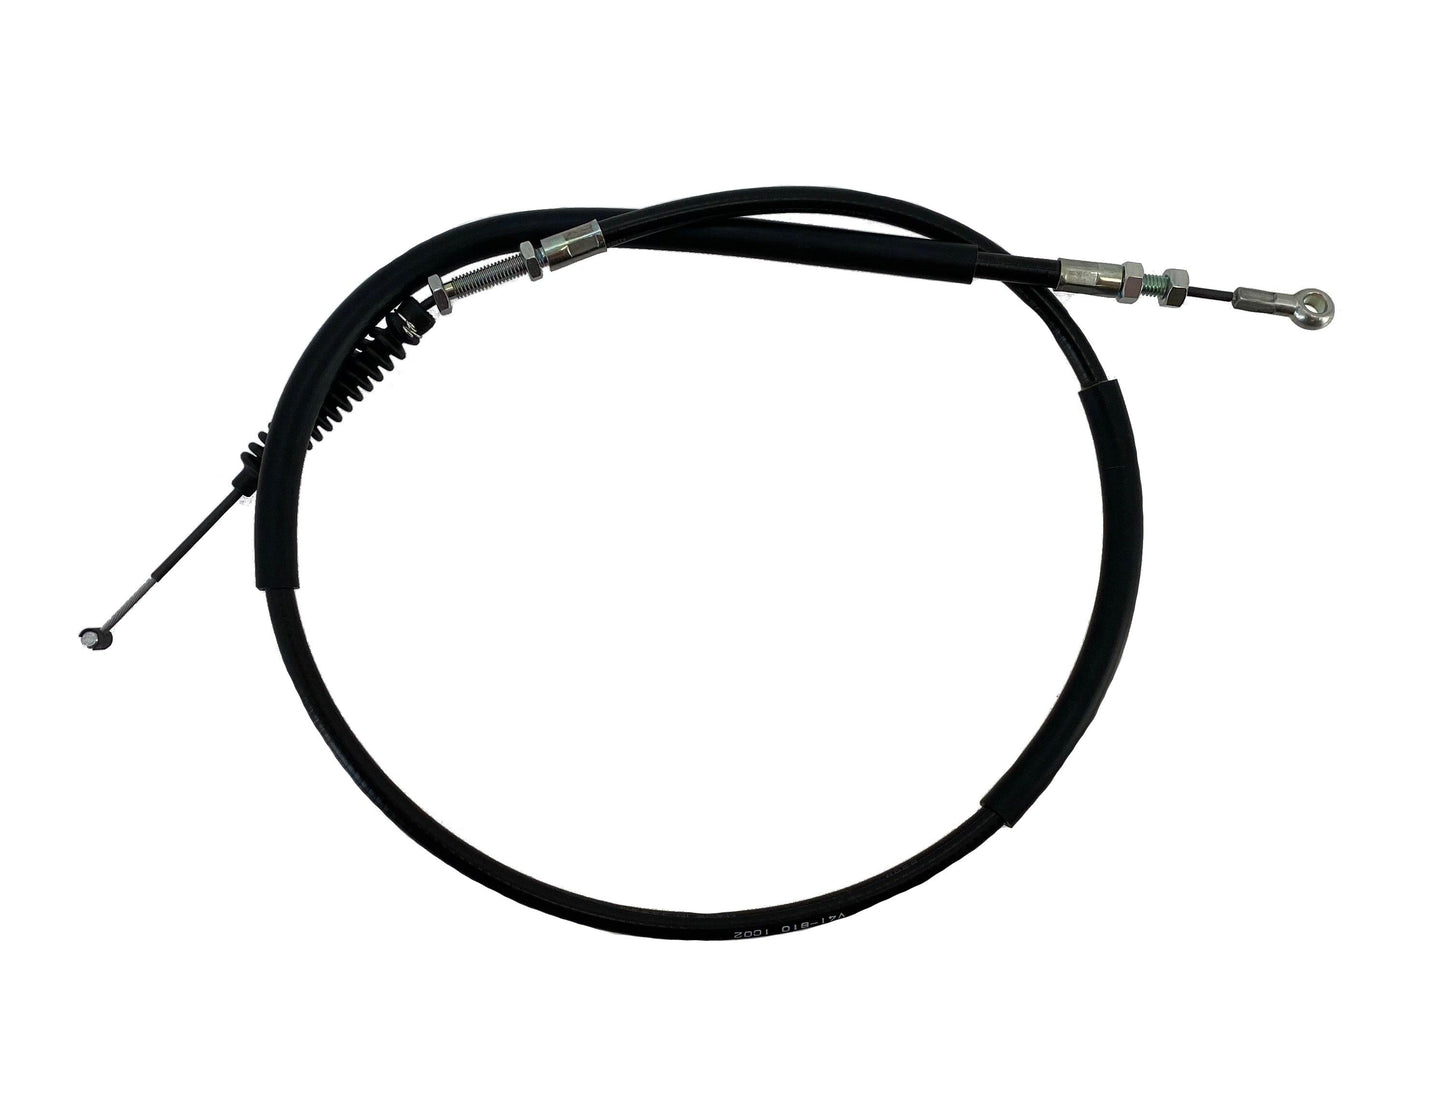 Honda Original Equipment Clutch Cable - 54510-V41-B10